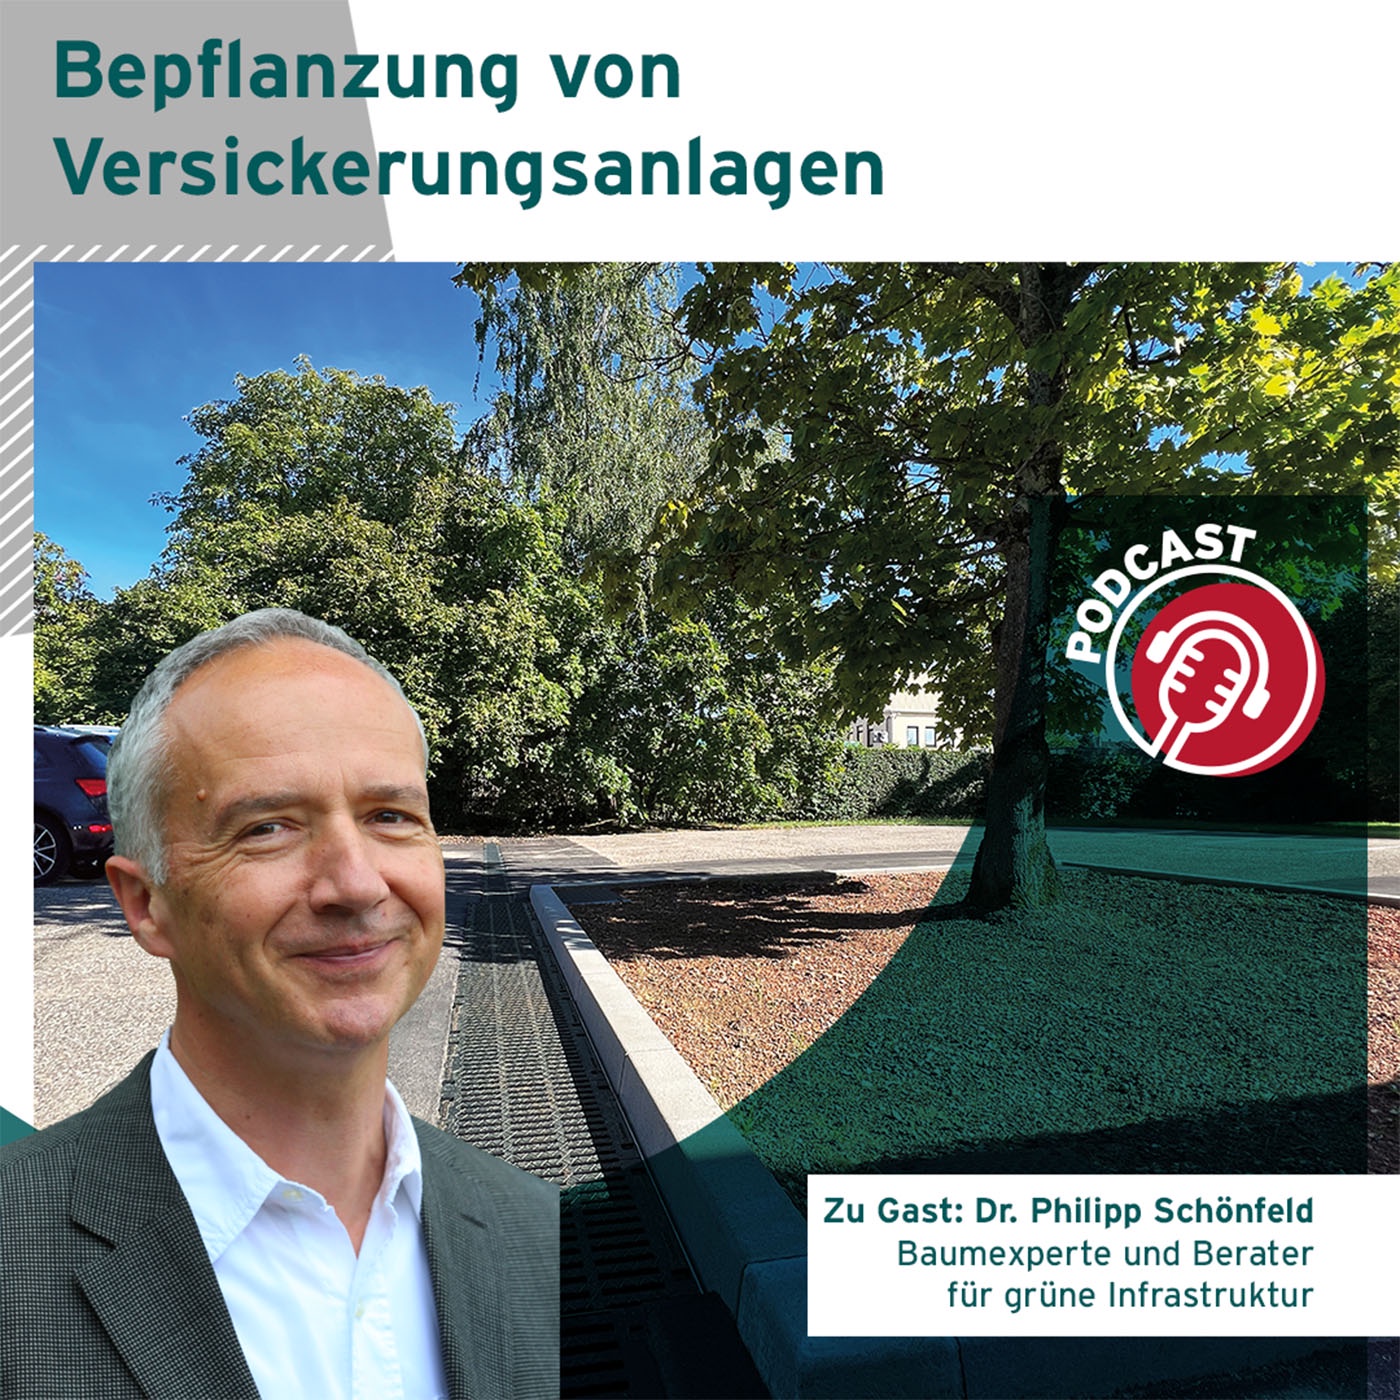 Bepflanzung von Versickerungsanlagen - Tipps vom Experten Dr. Philipp Schönfeld